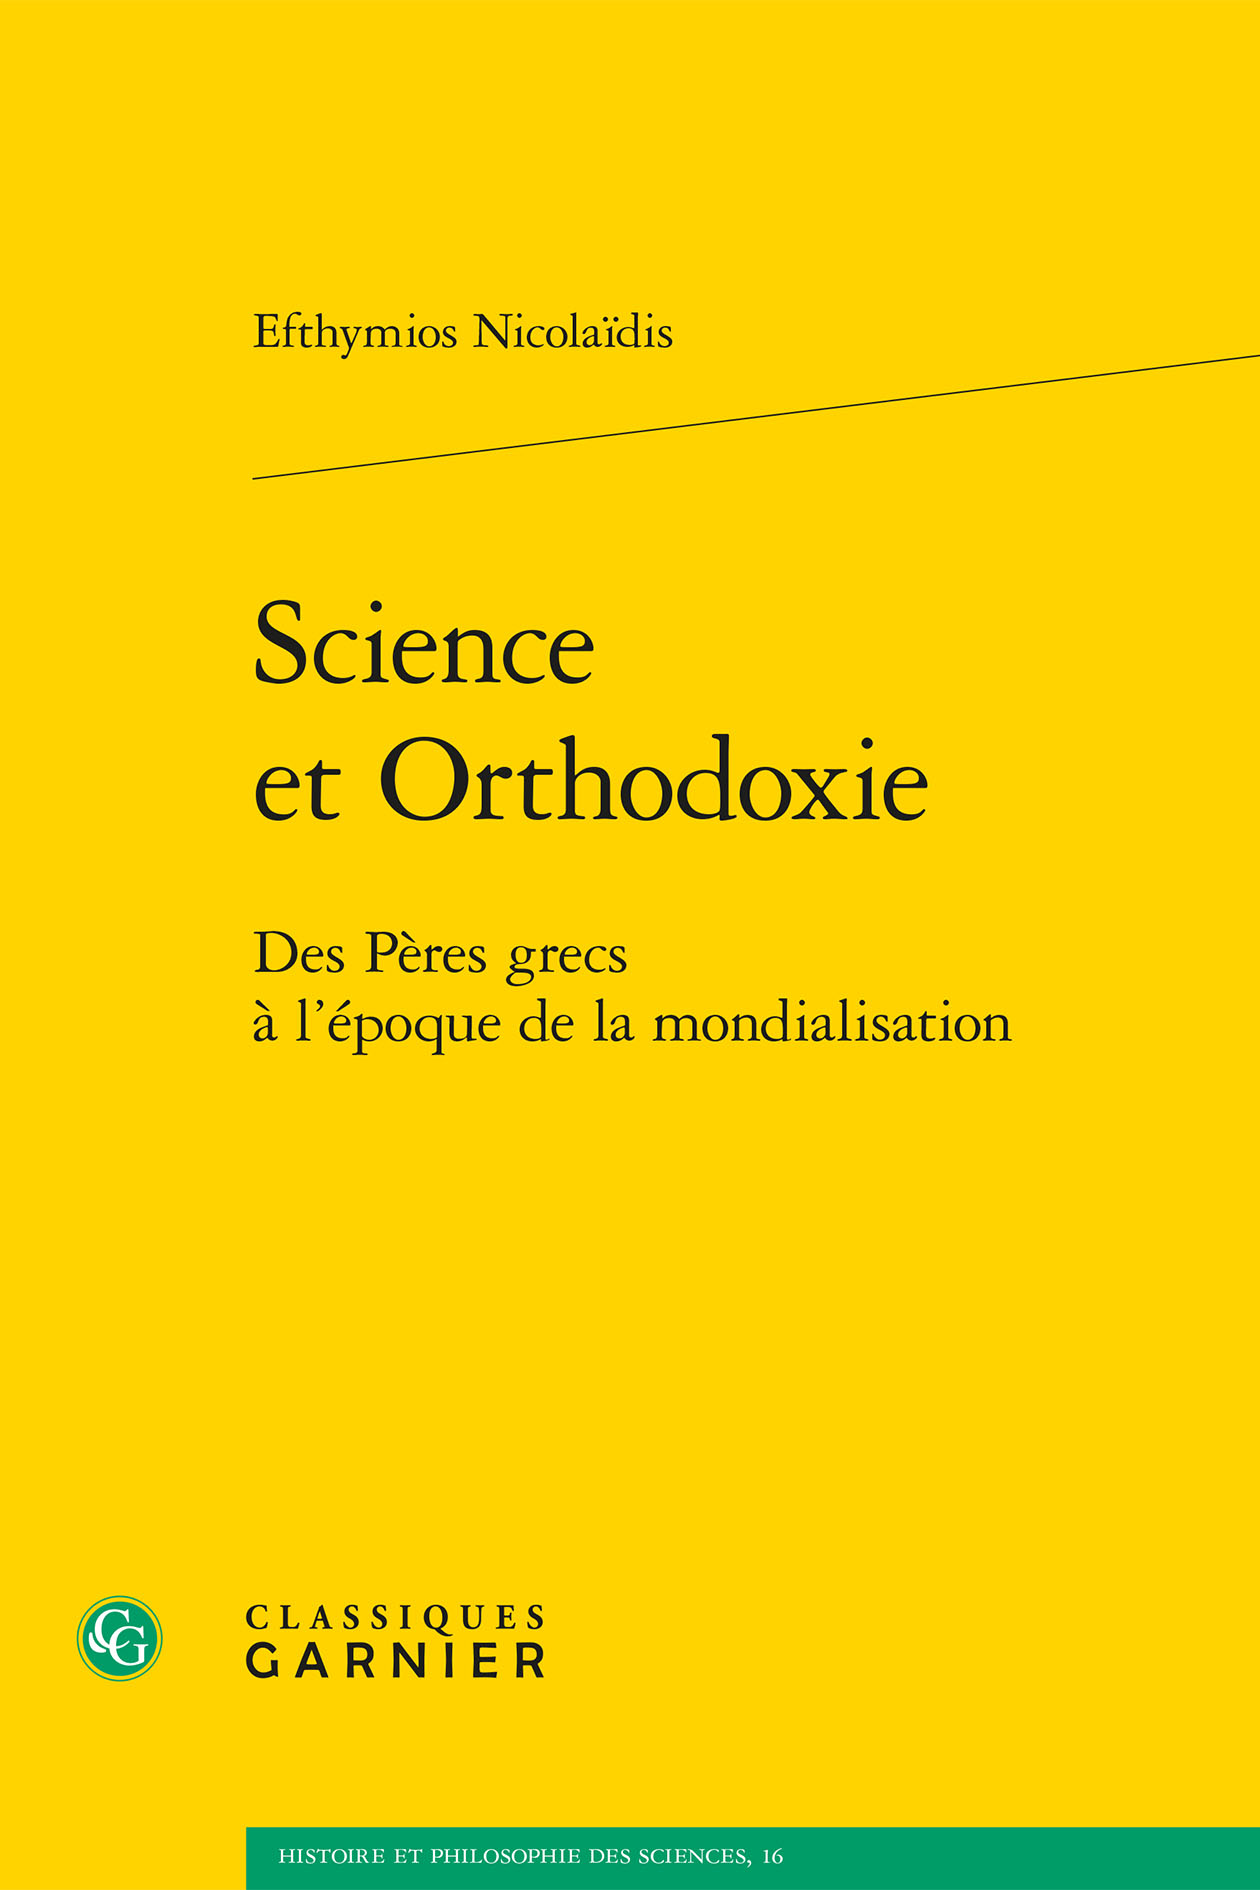 Vient de paraître : « Science et orthodoxie – Des Pères grecs à l’époque de la mondialisation » (Classiques Garnier)